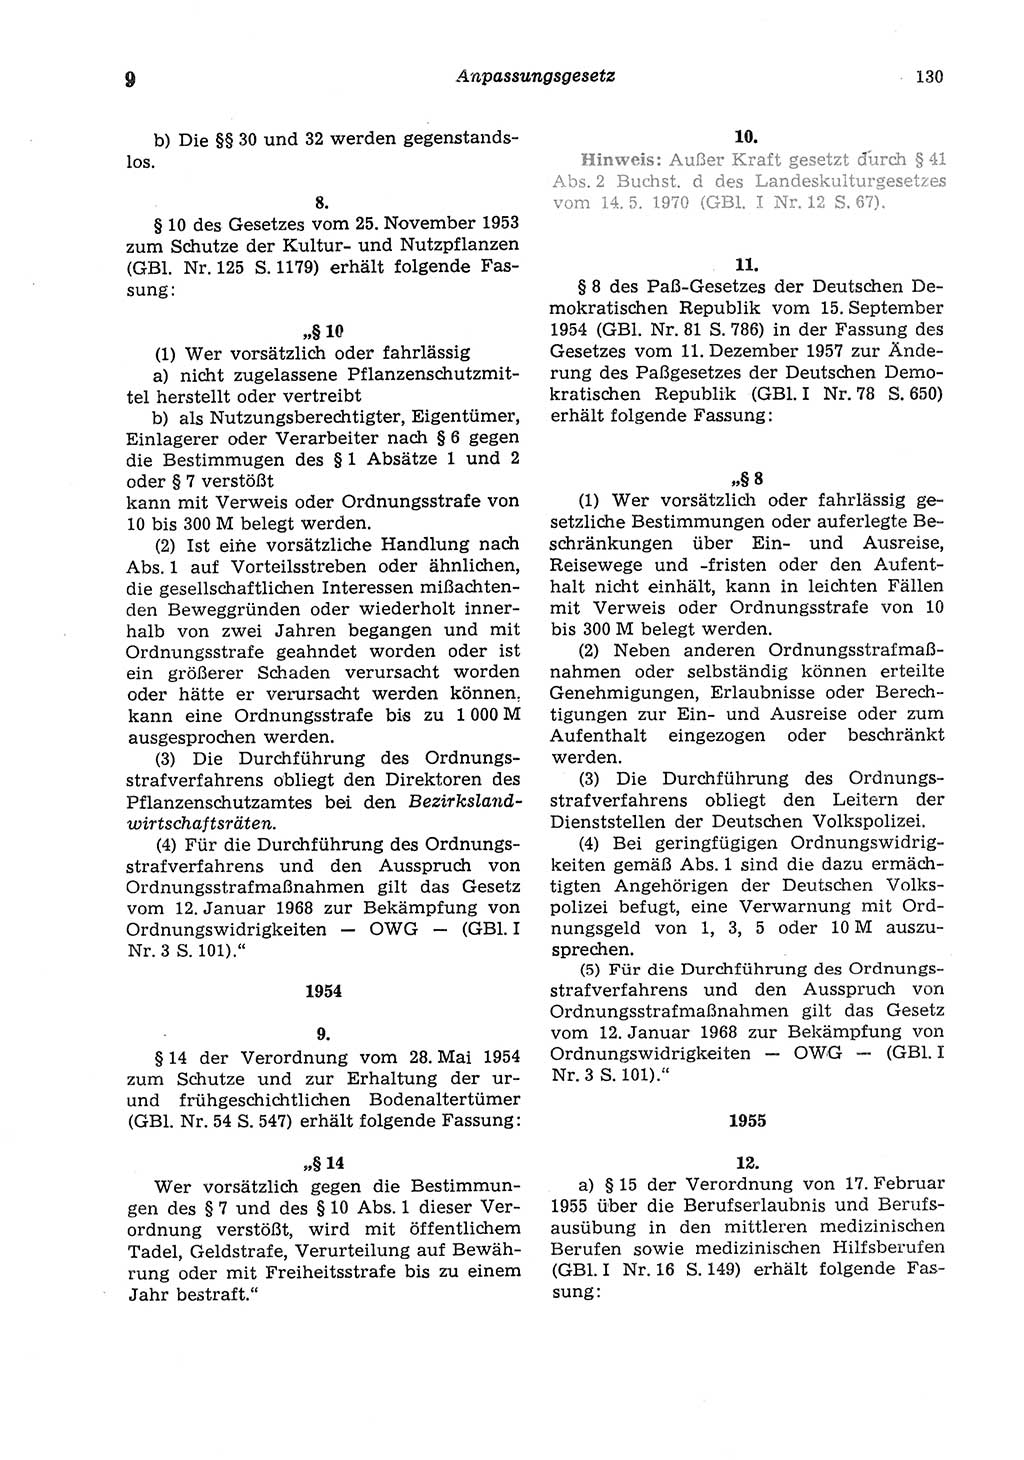 Strafgesetzbuch (StGB) der Deutschen Demokratischen Republik (DDR) und angrenzende Gesetze und Bestimmungen 1975, Seite 130 (StGB DDR Ges. Best. 1975, S. 130)